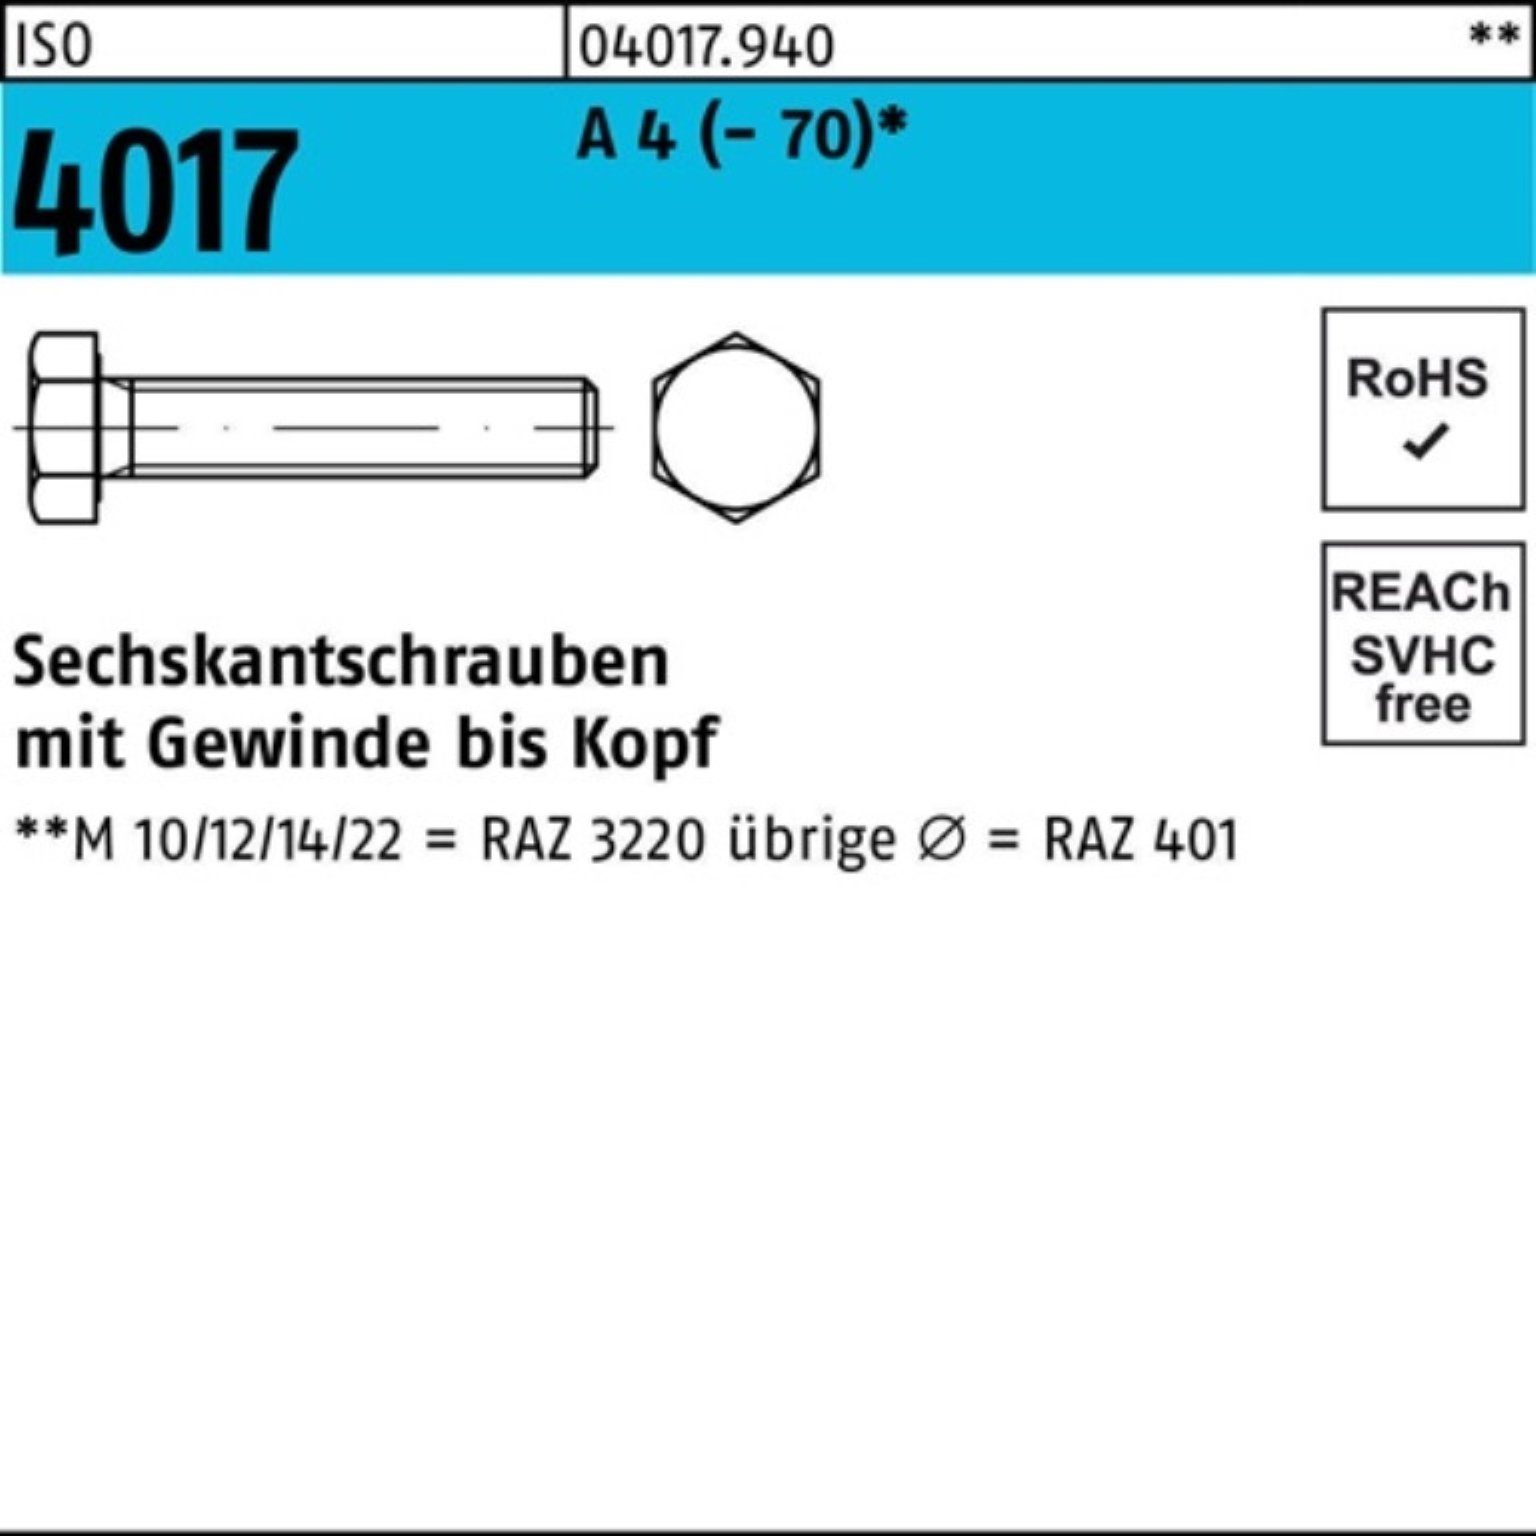 Bufab Sechskantschraube 100er Pack Sechskantschraube ISO 4017 VG M6x 60 A 4 (70) 100 Stück